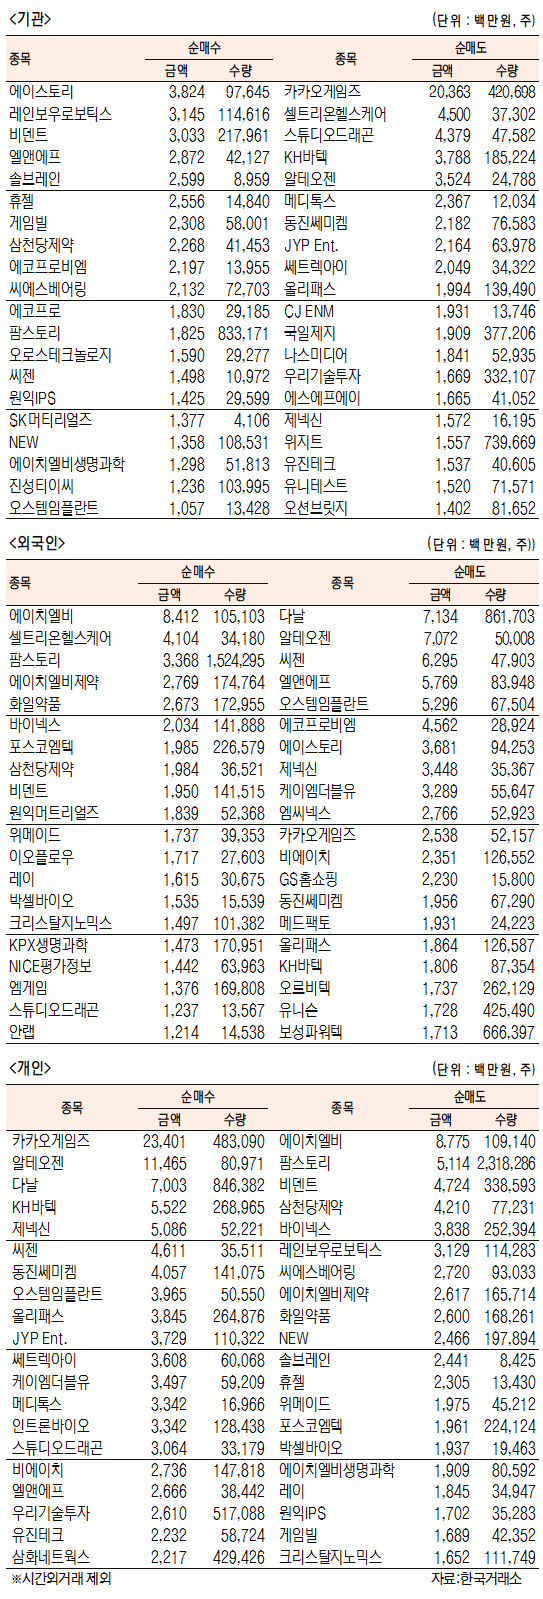 [표]코스닥 기관·외국인·개인 순매수·도 상위종목(3월 10일)